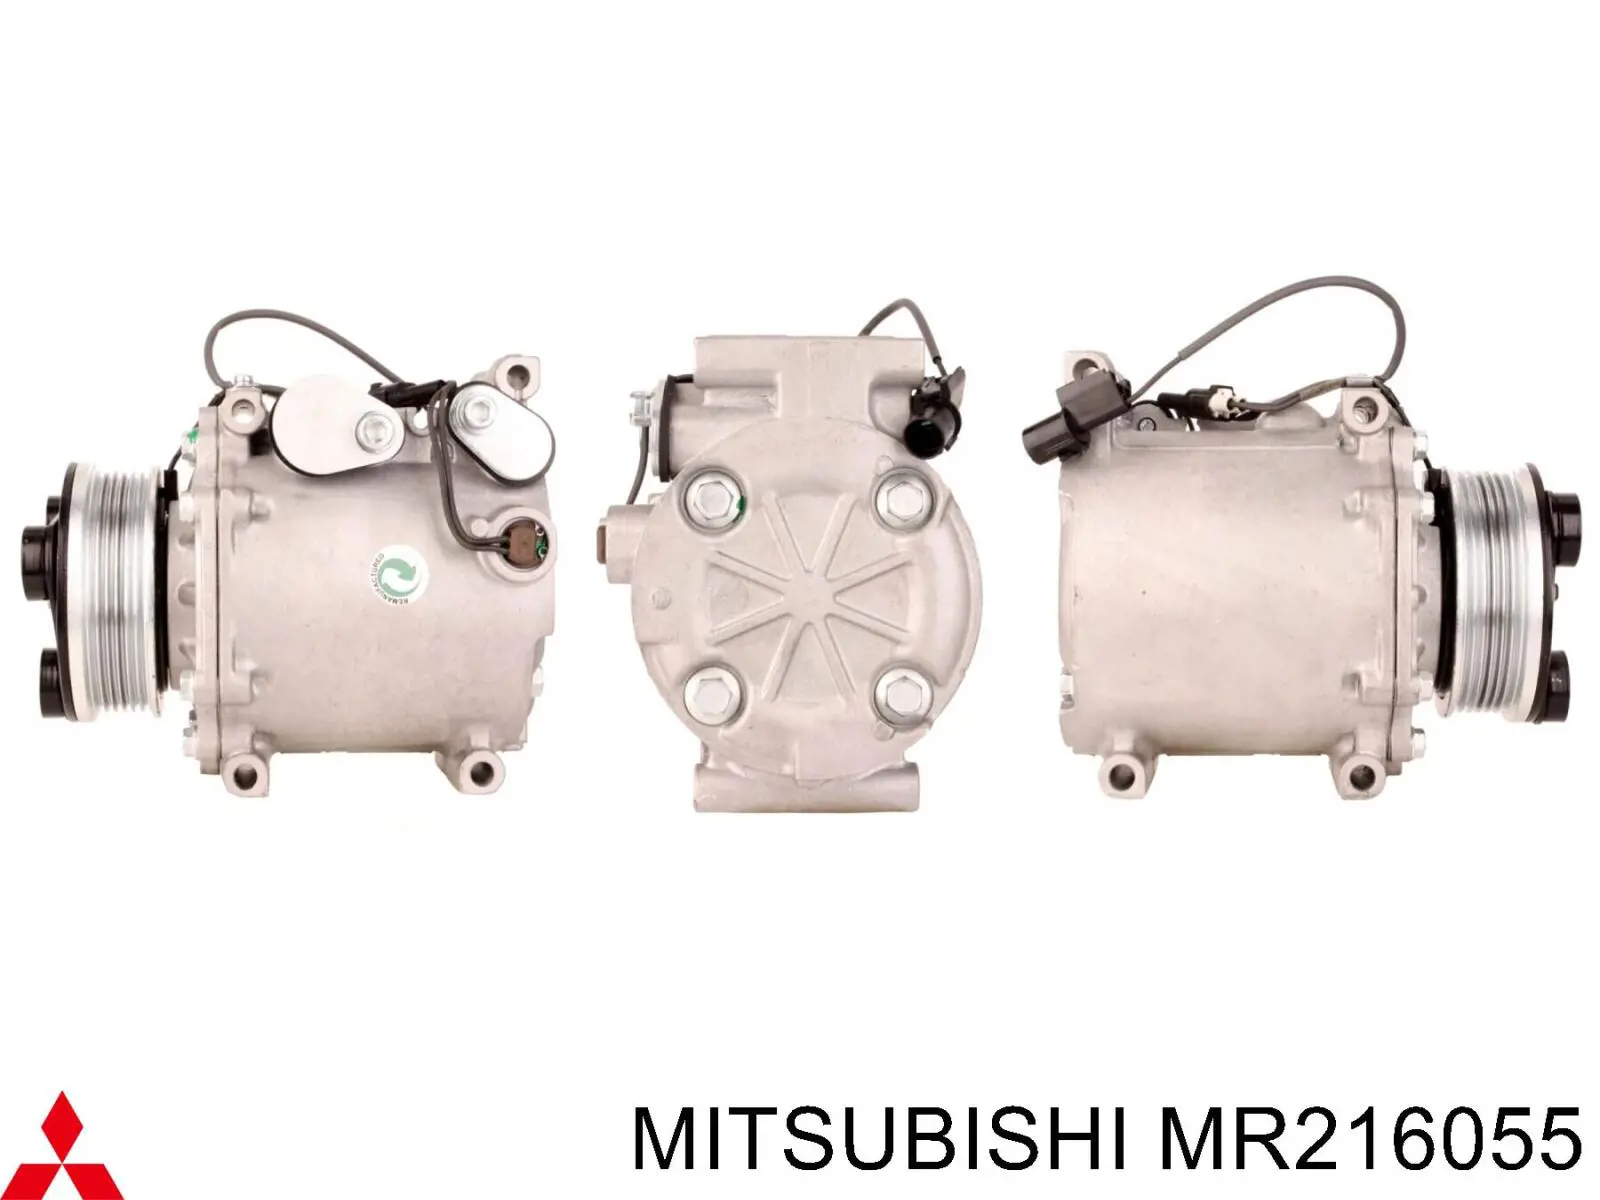 MR216055 Mitsubishi compressor de aparelho de ar condicionado